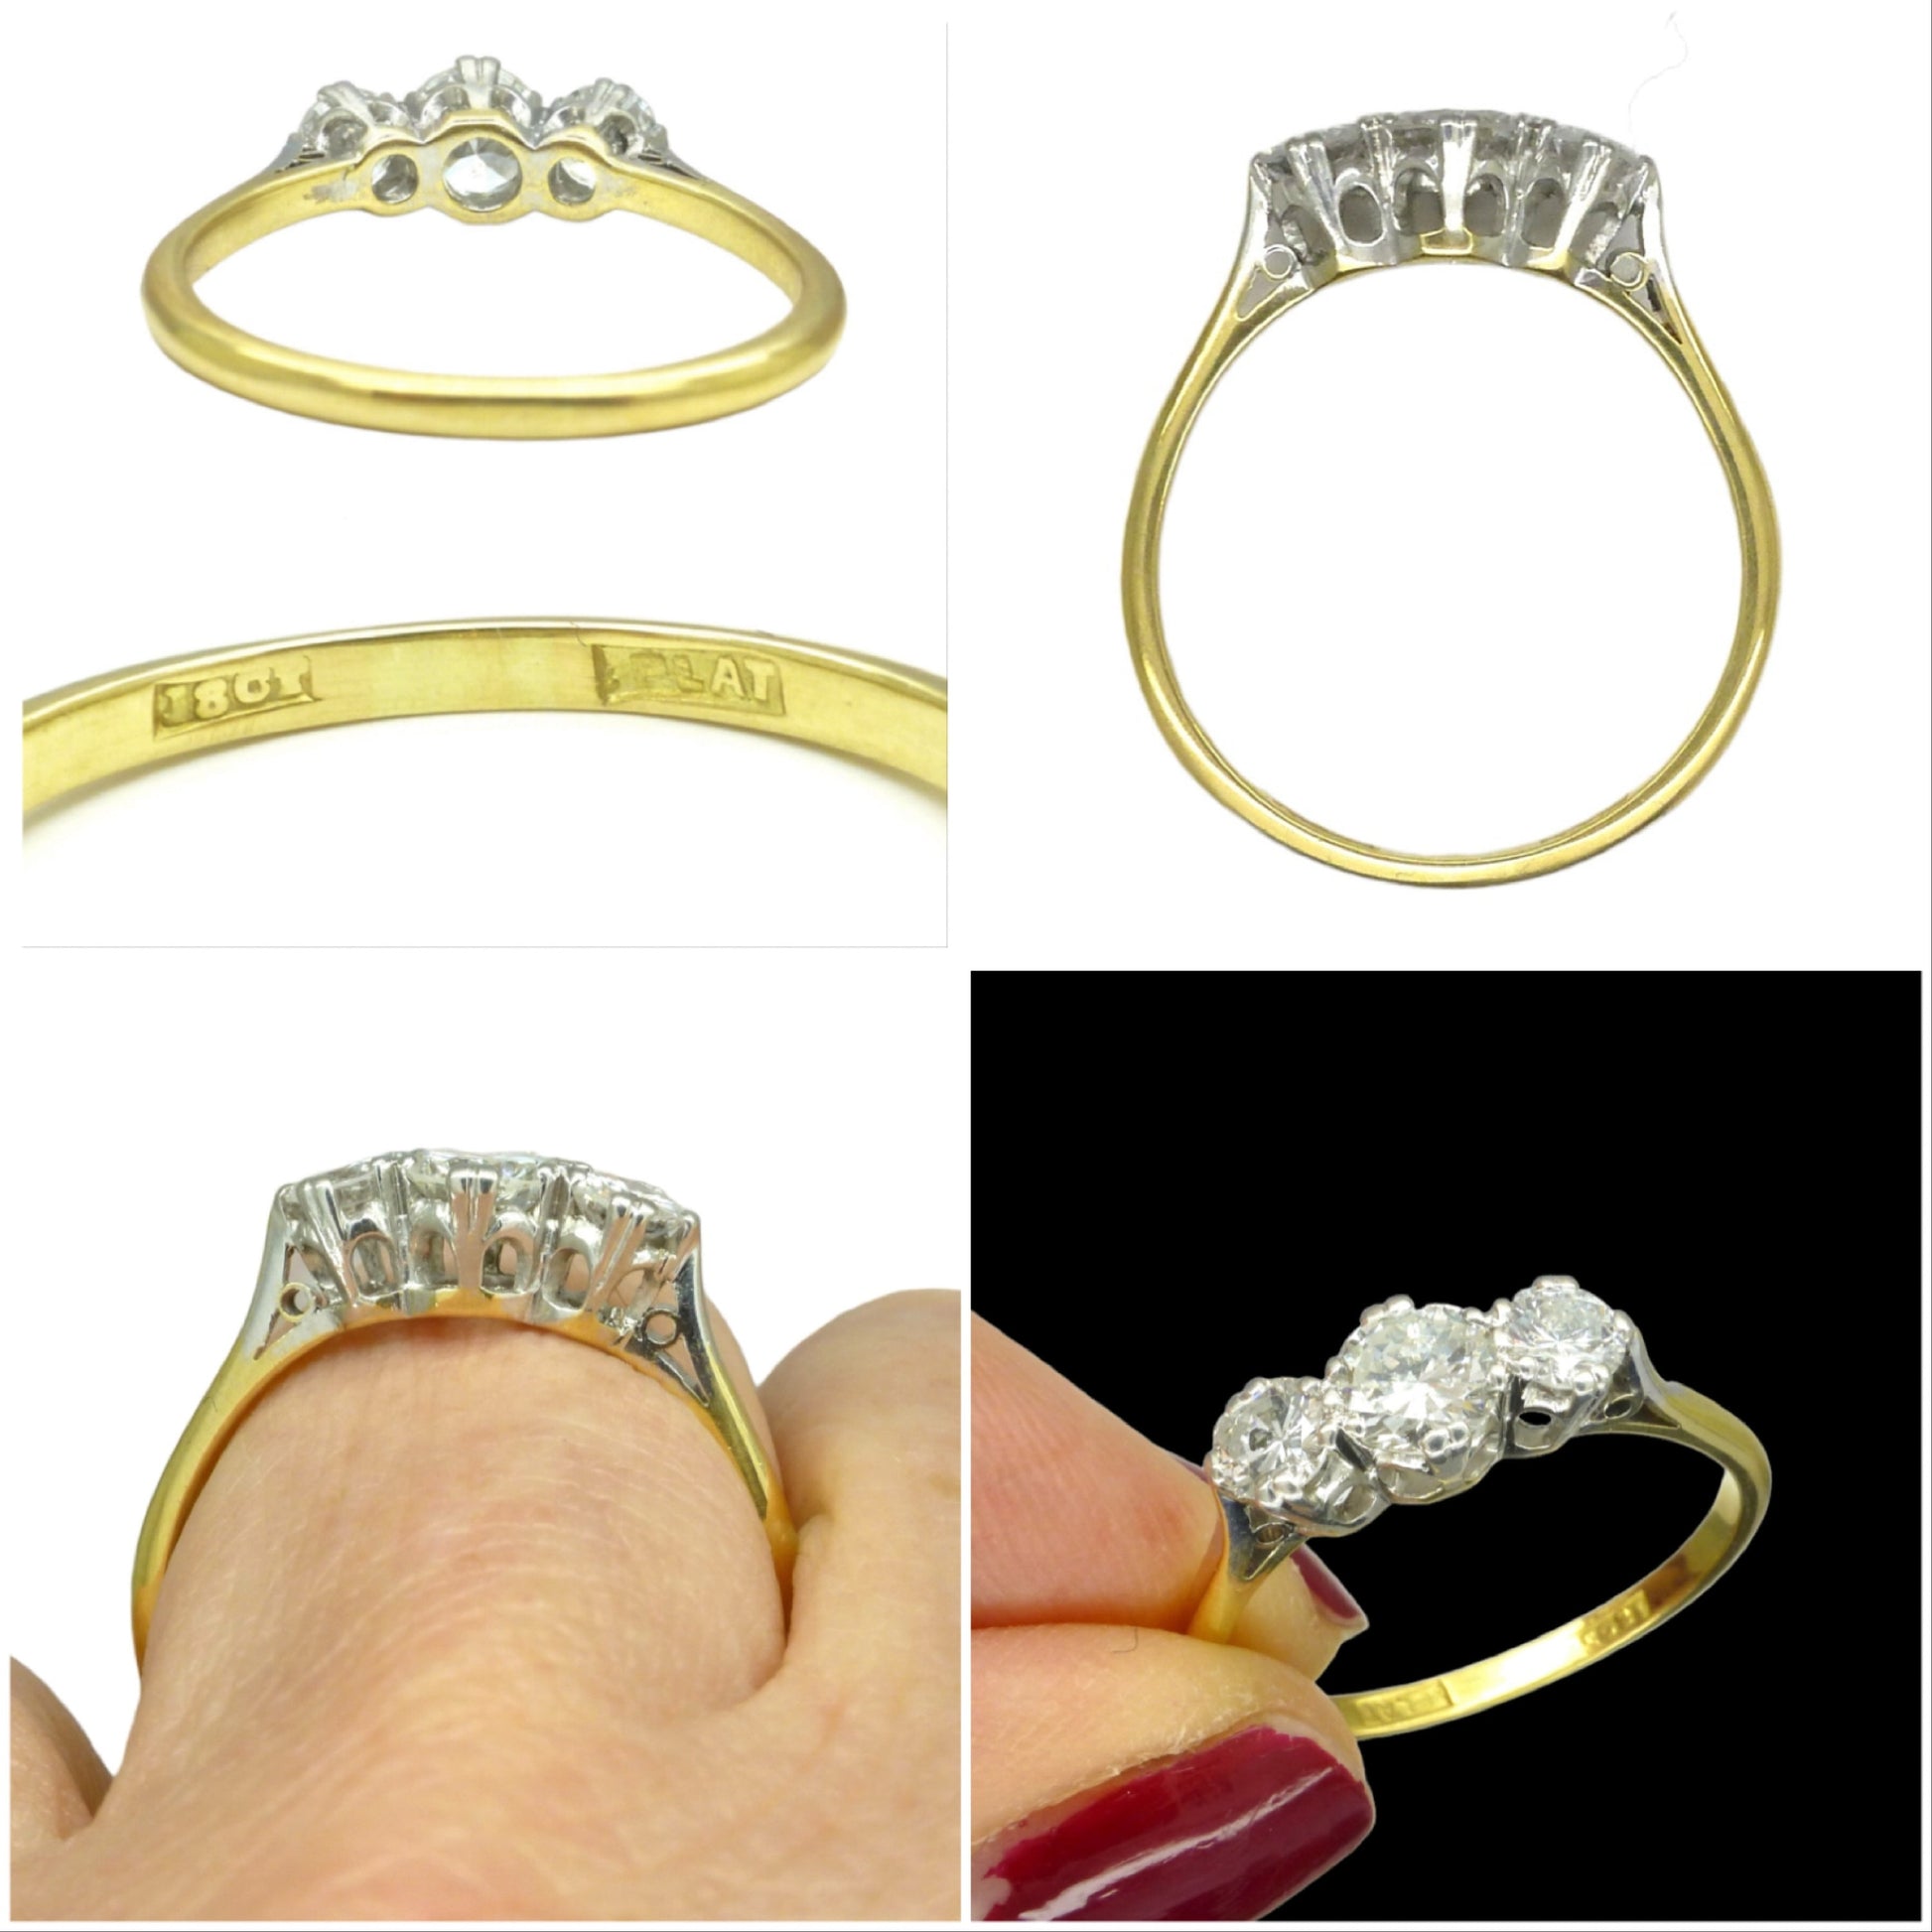 Vintage 18ct Platinum brilliant cut diamond three stone trilogy ring 0.90ct ~ c1930's